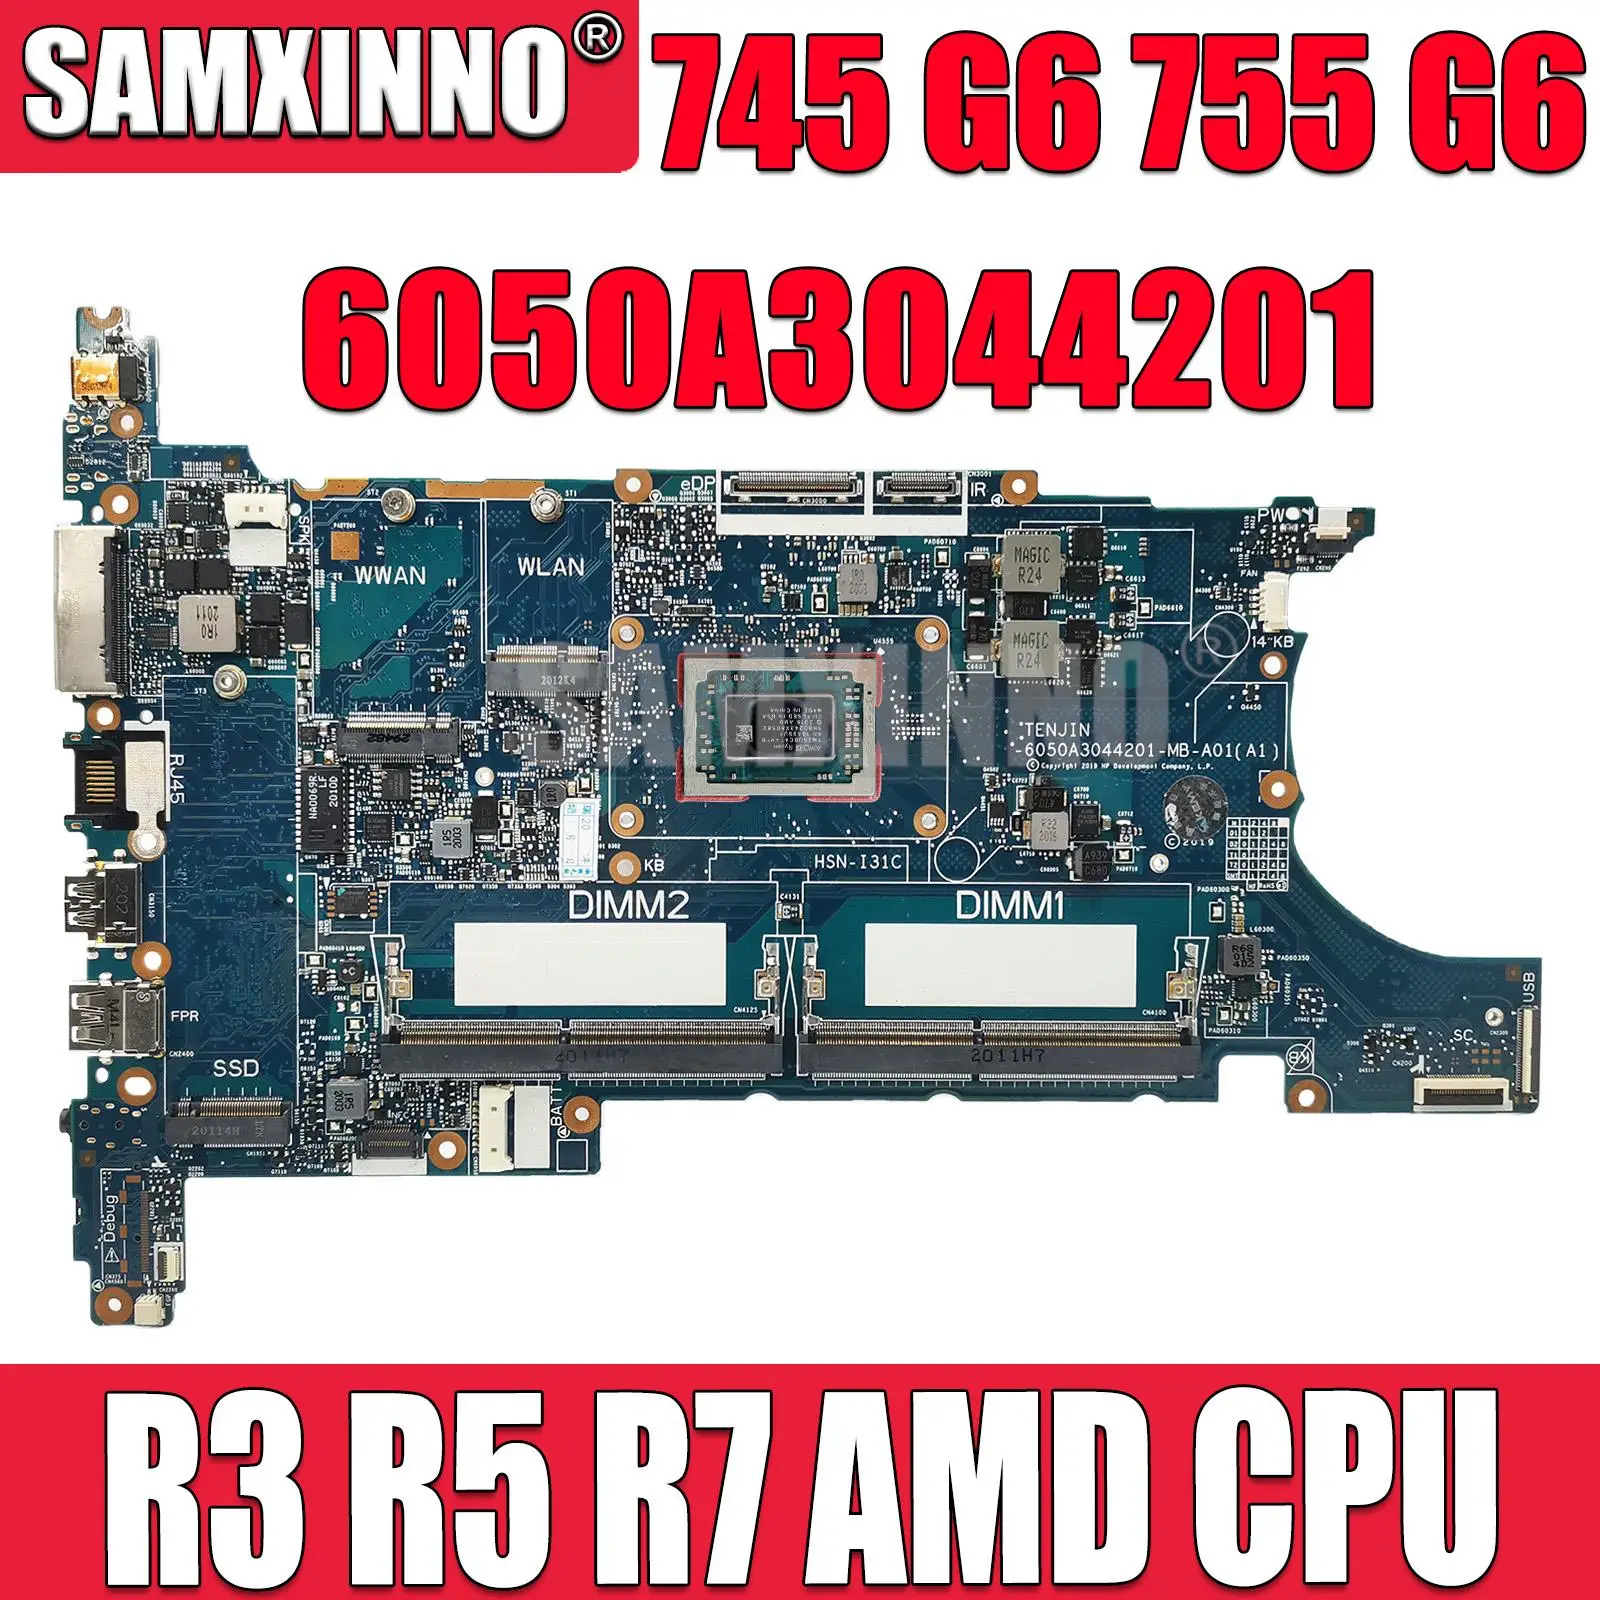 Для HP EliteBook 745 G6 755 G6 Материнская плата ноутбука с процессором AMD 6050A3044201 R3-3300 R5-3500 R7-3700 Материнская плата 0